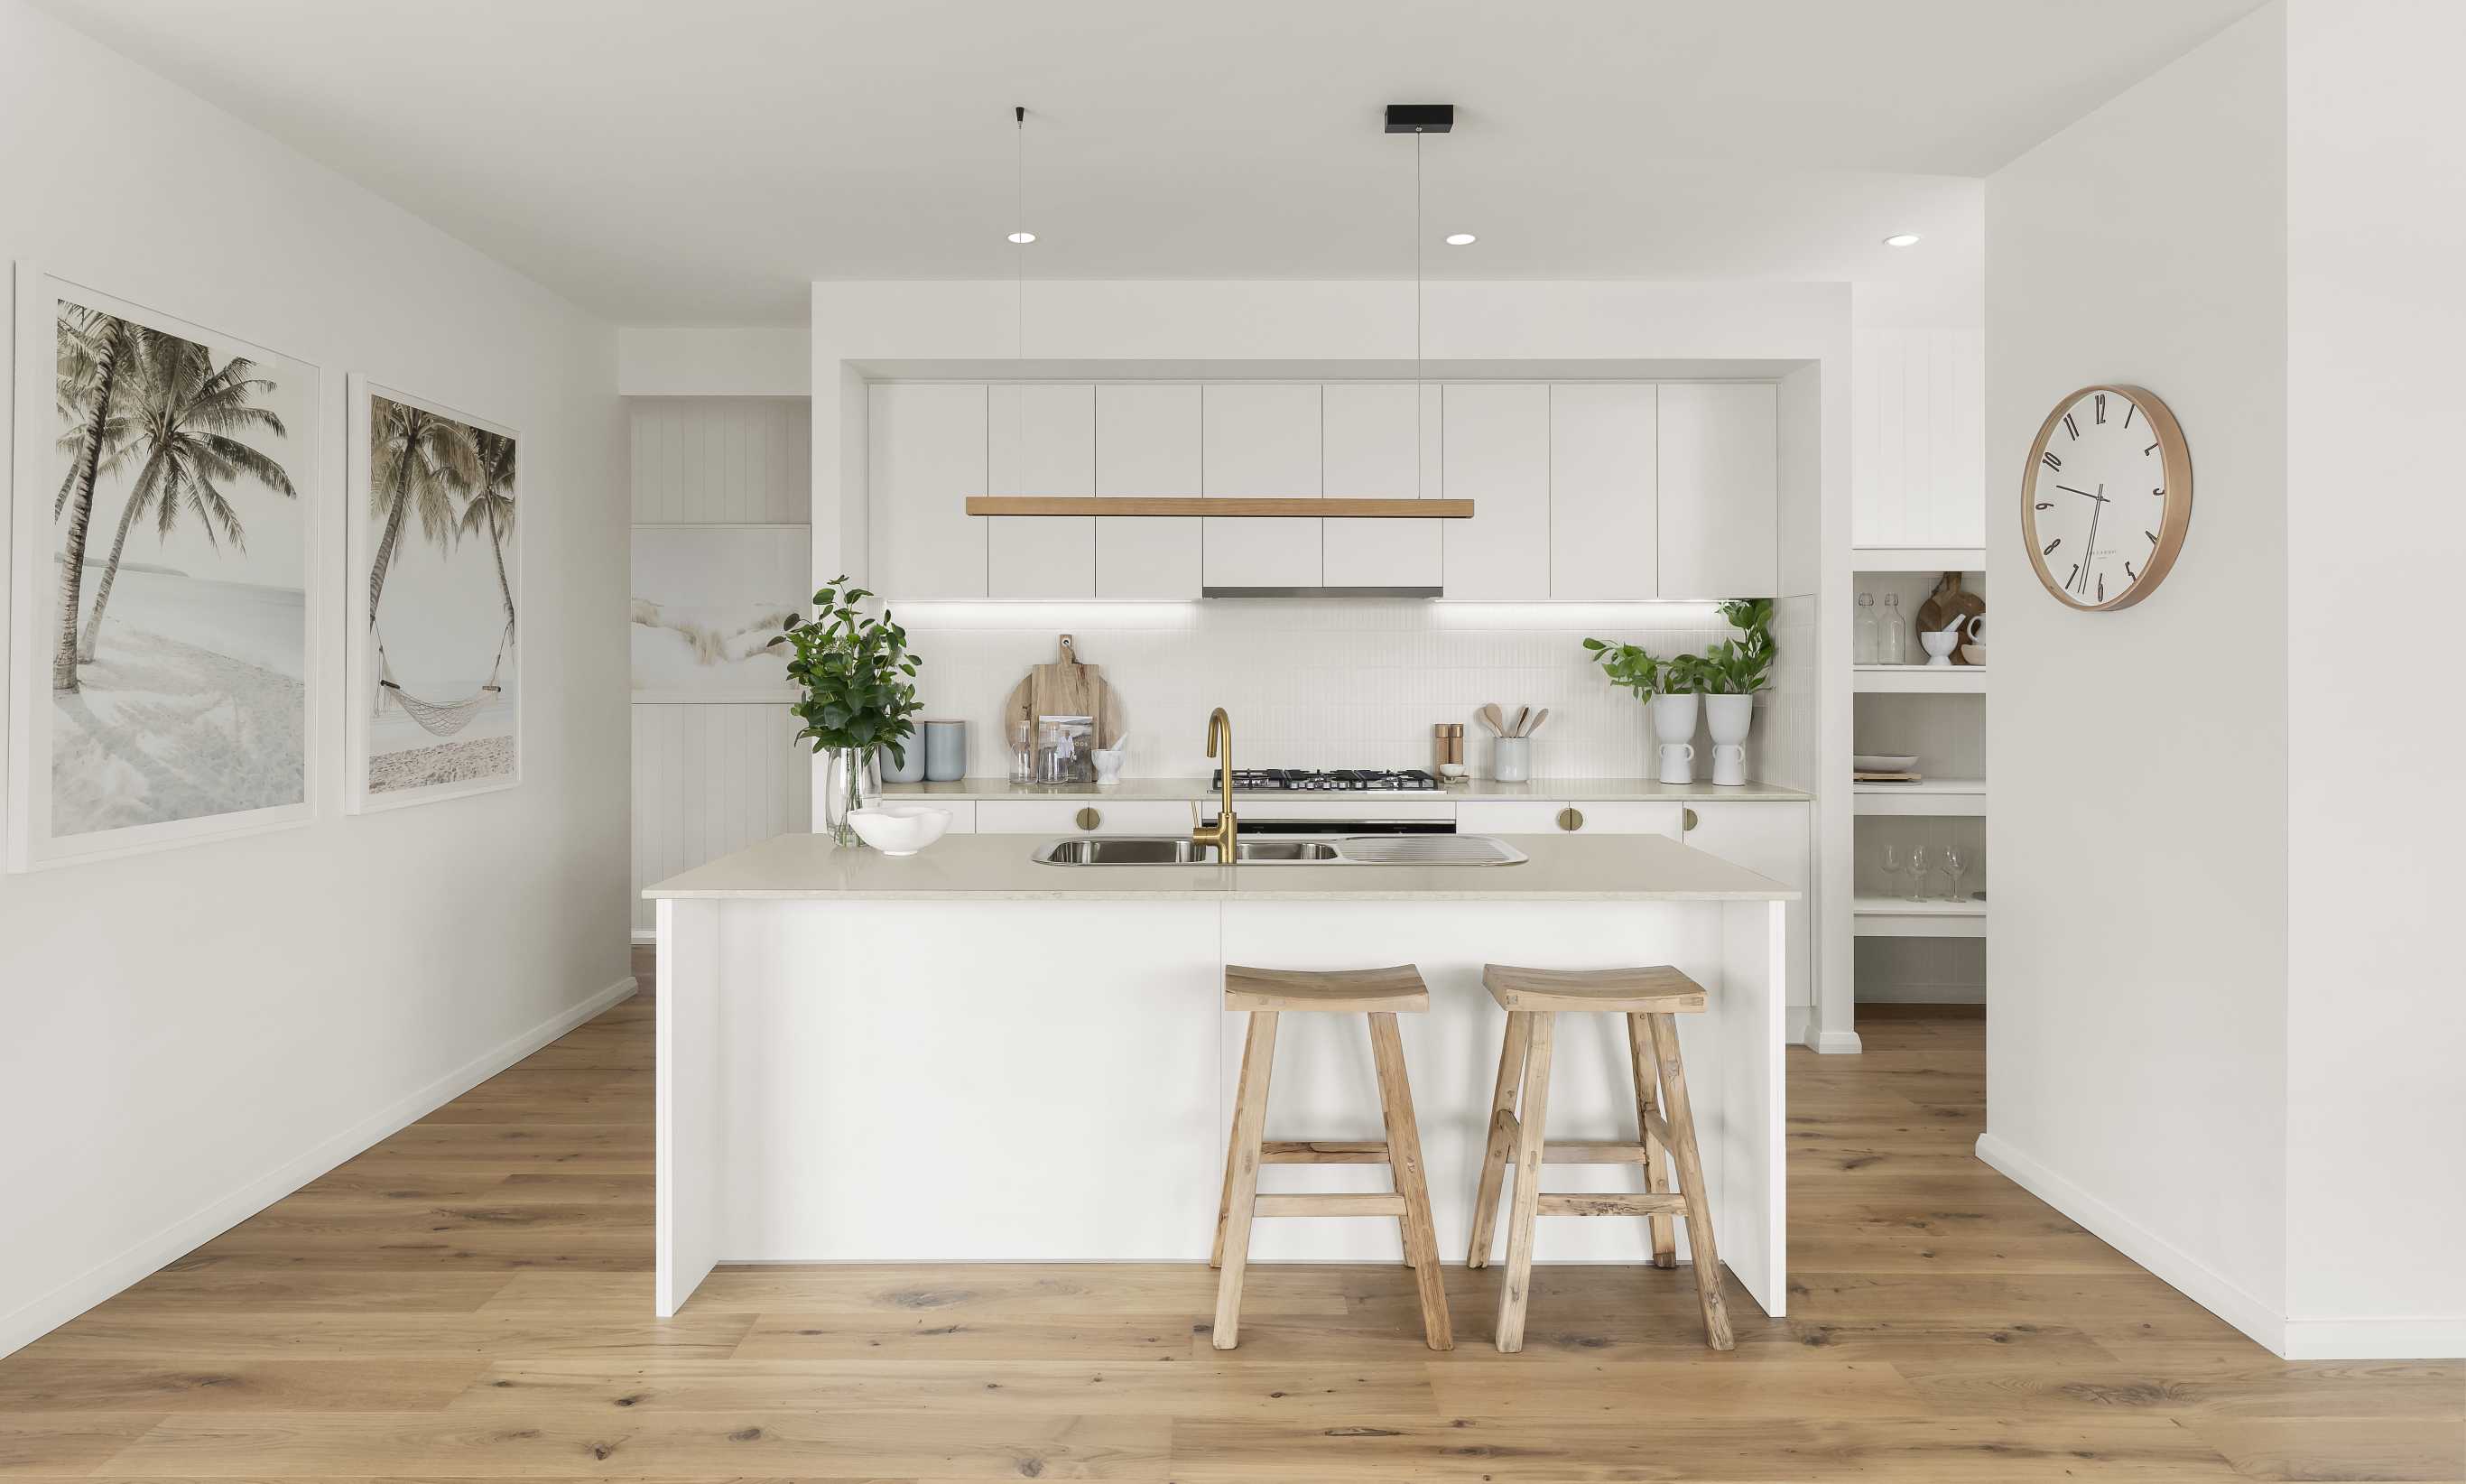 ibiza-two-single-storey-home-design-kitchen